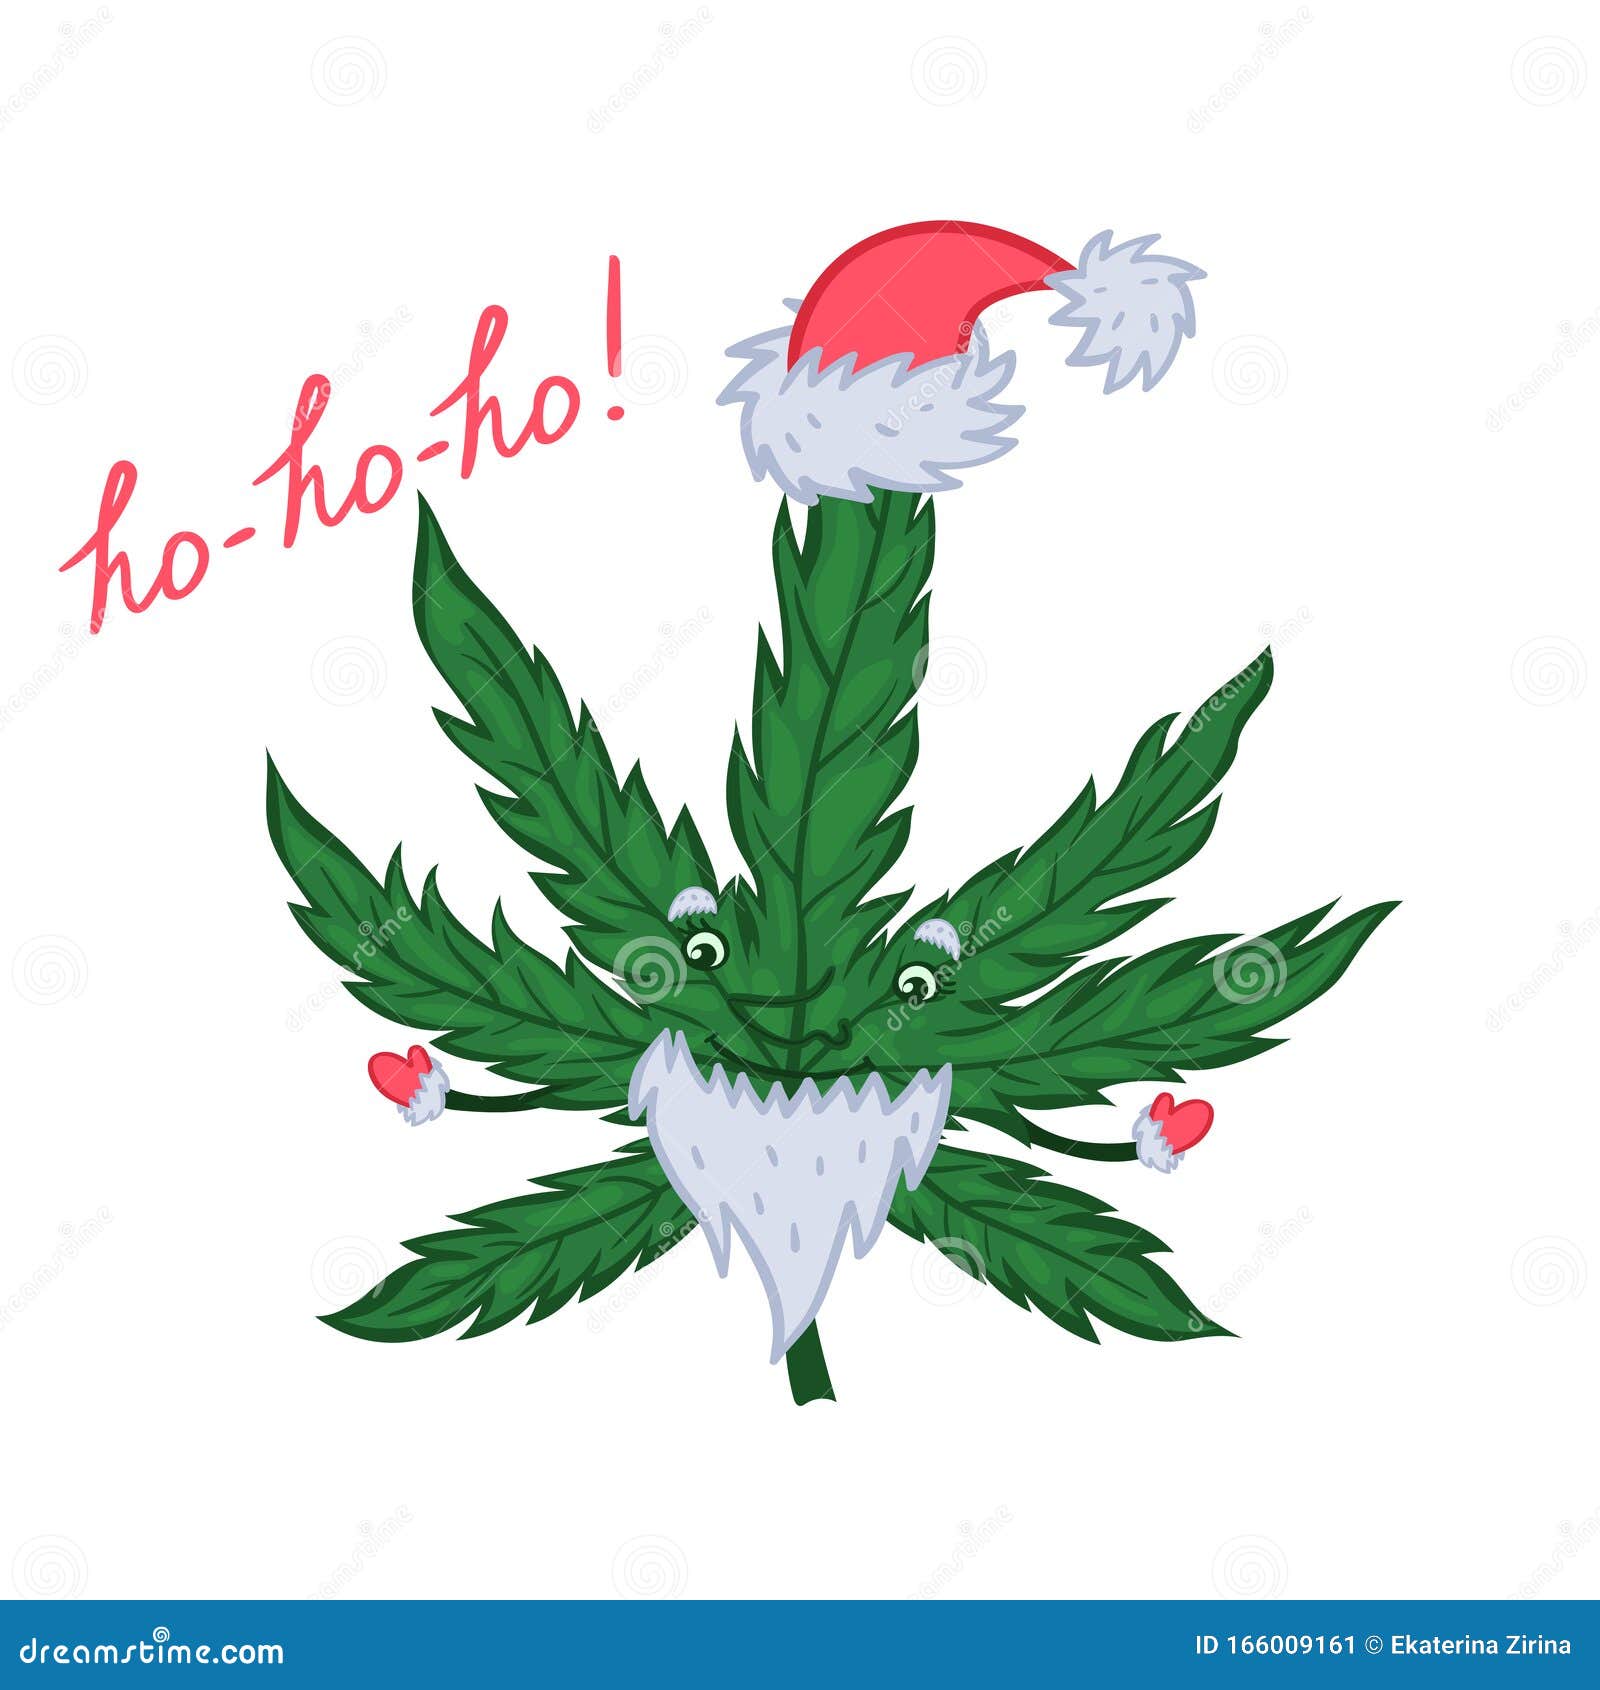 Новый год и марихуана 2016 тор с браузером яндекс попасть на гидру